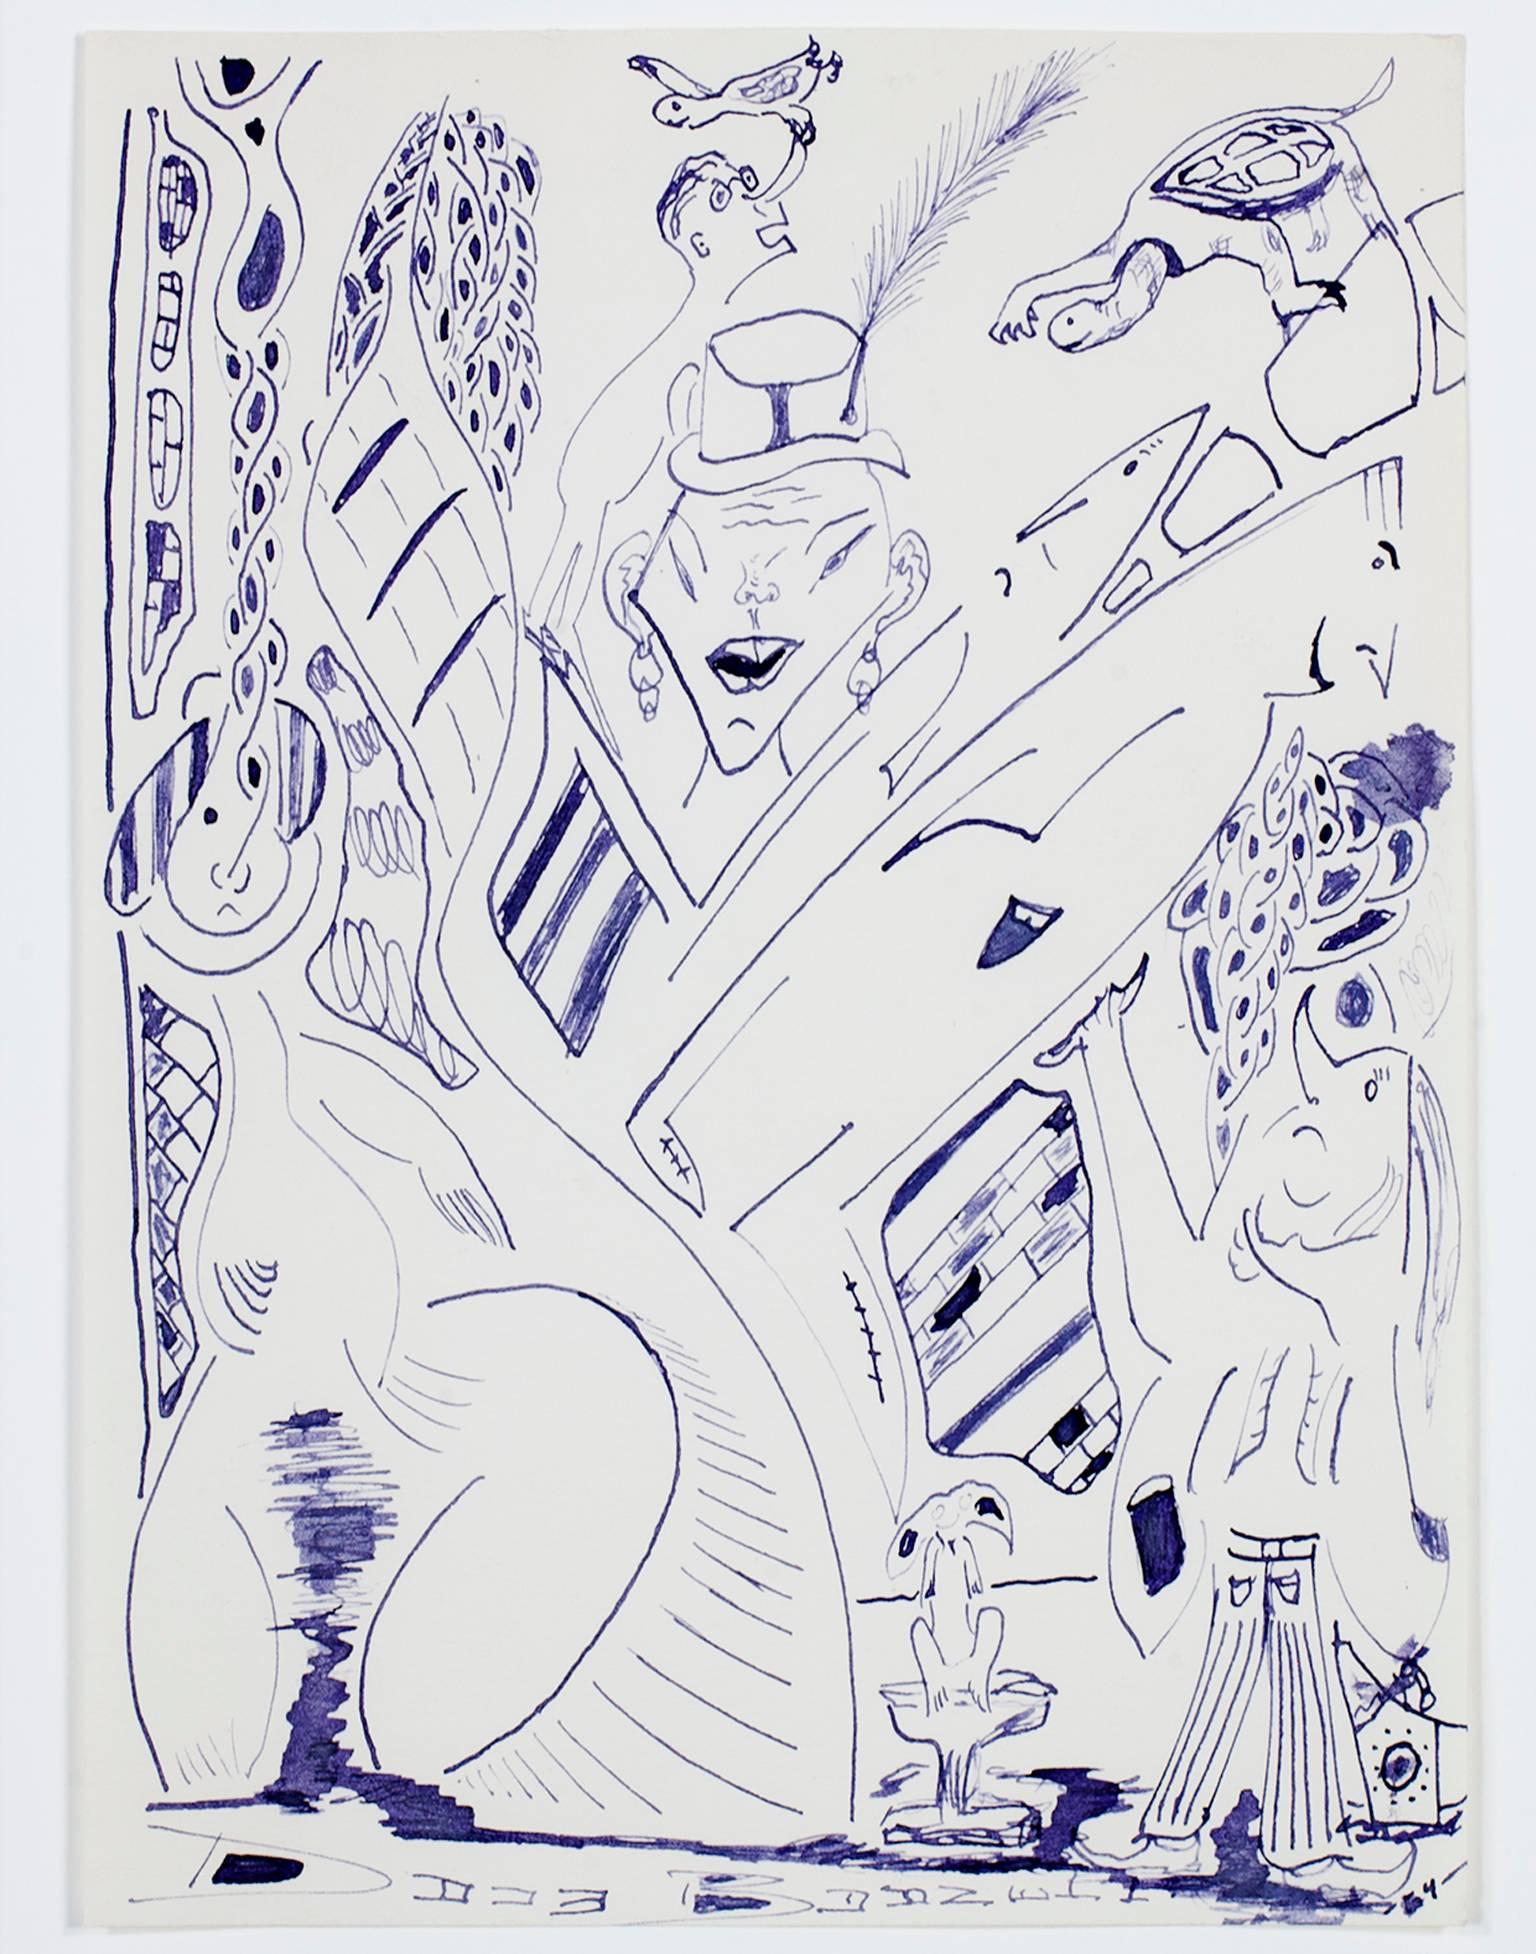 "Circus Side Show with Flying Turtles" ist eine originale lila Tuschezeichnung von David Barnett. Der Künstler signierte das Kunstwerk im unteren Teil der Zeichnung und schrieb das Datum unten rechts. Es zeigt eine surreale Anordnung von Figuren und